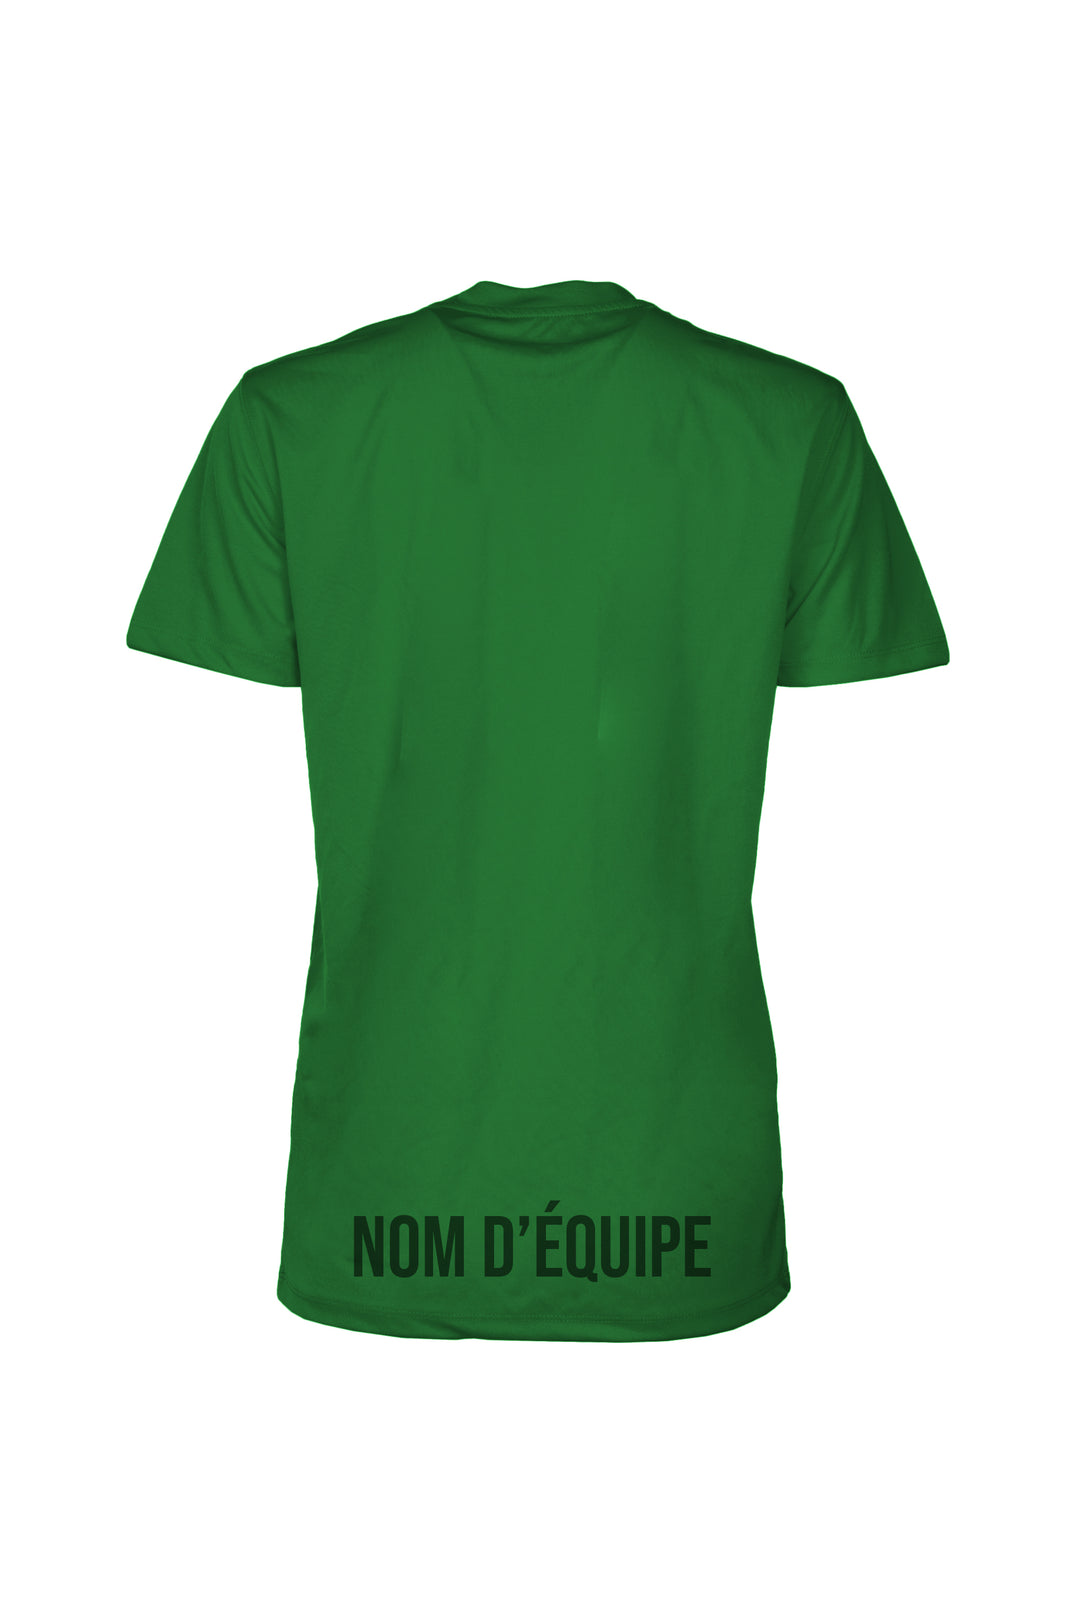 T-shirts sportif - 24h Tremblant avec nom d'équipe personnalisable [Vert]